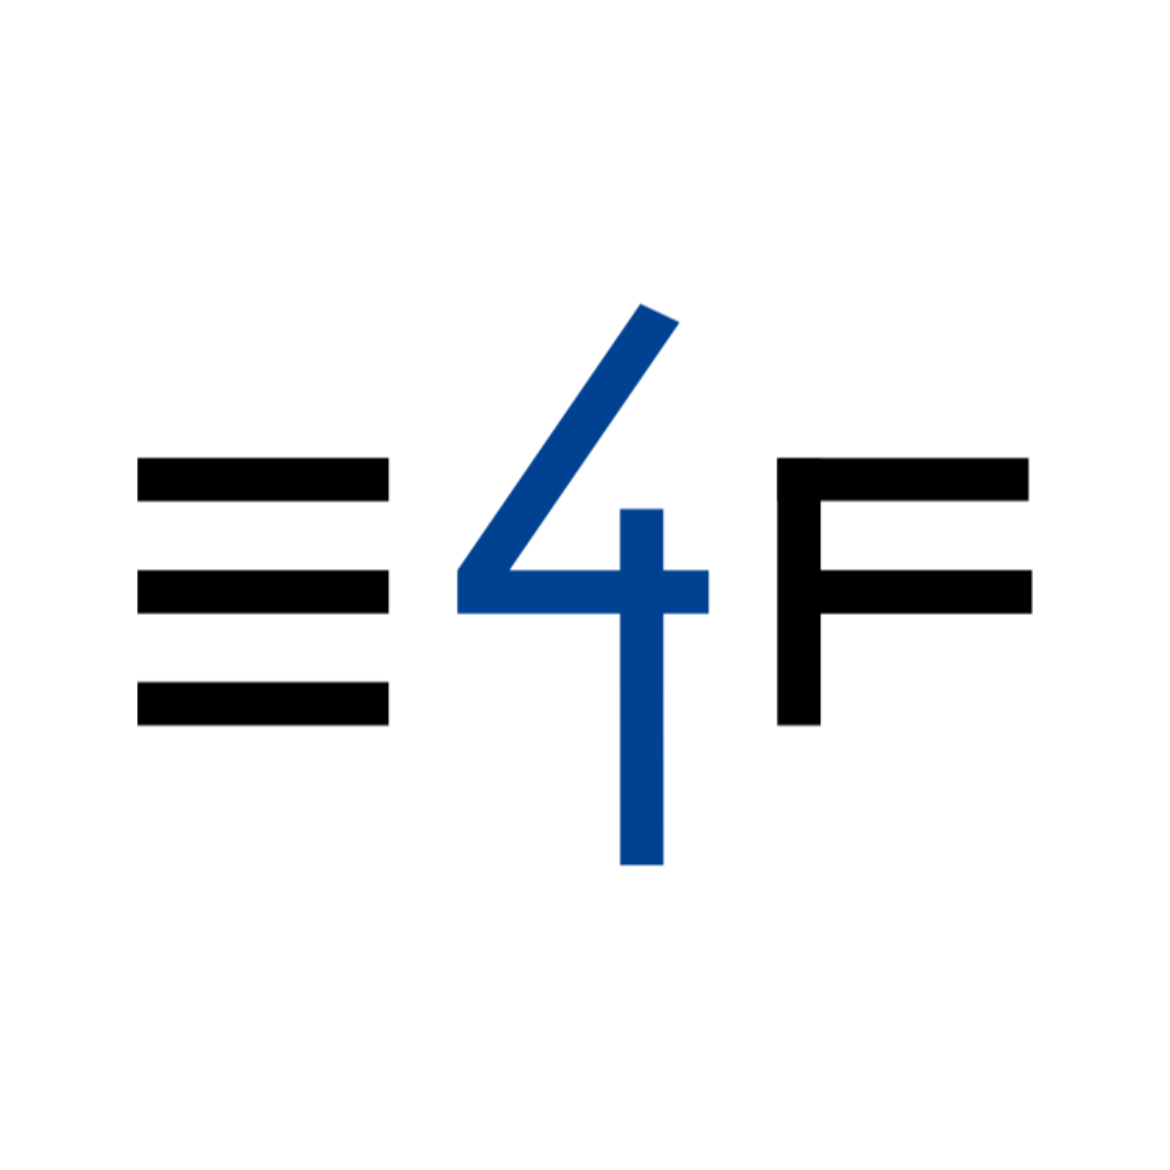 Logo des Projekts Elements4Founding, schwarze und blaue Schrift auf weißem Hintergrund, welche die Abkürzung "E4F" darstellt.